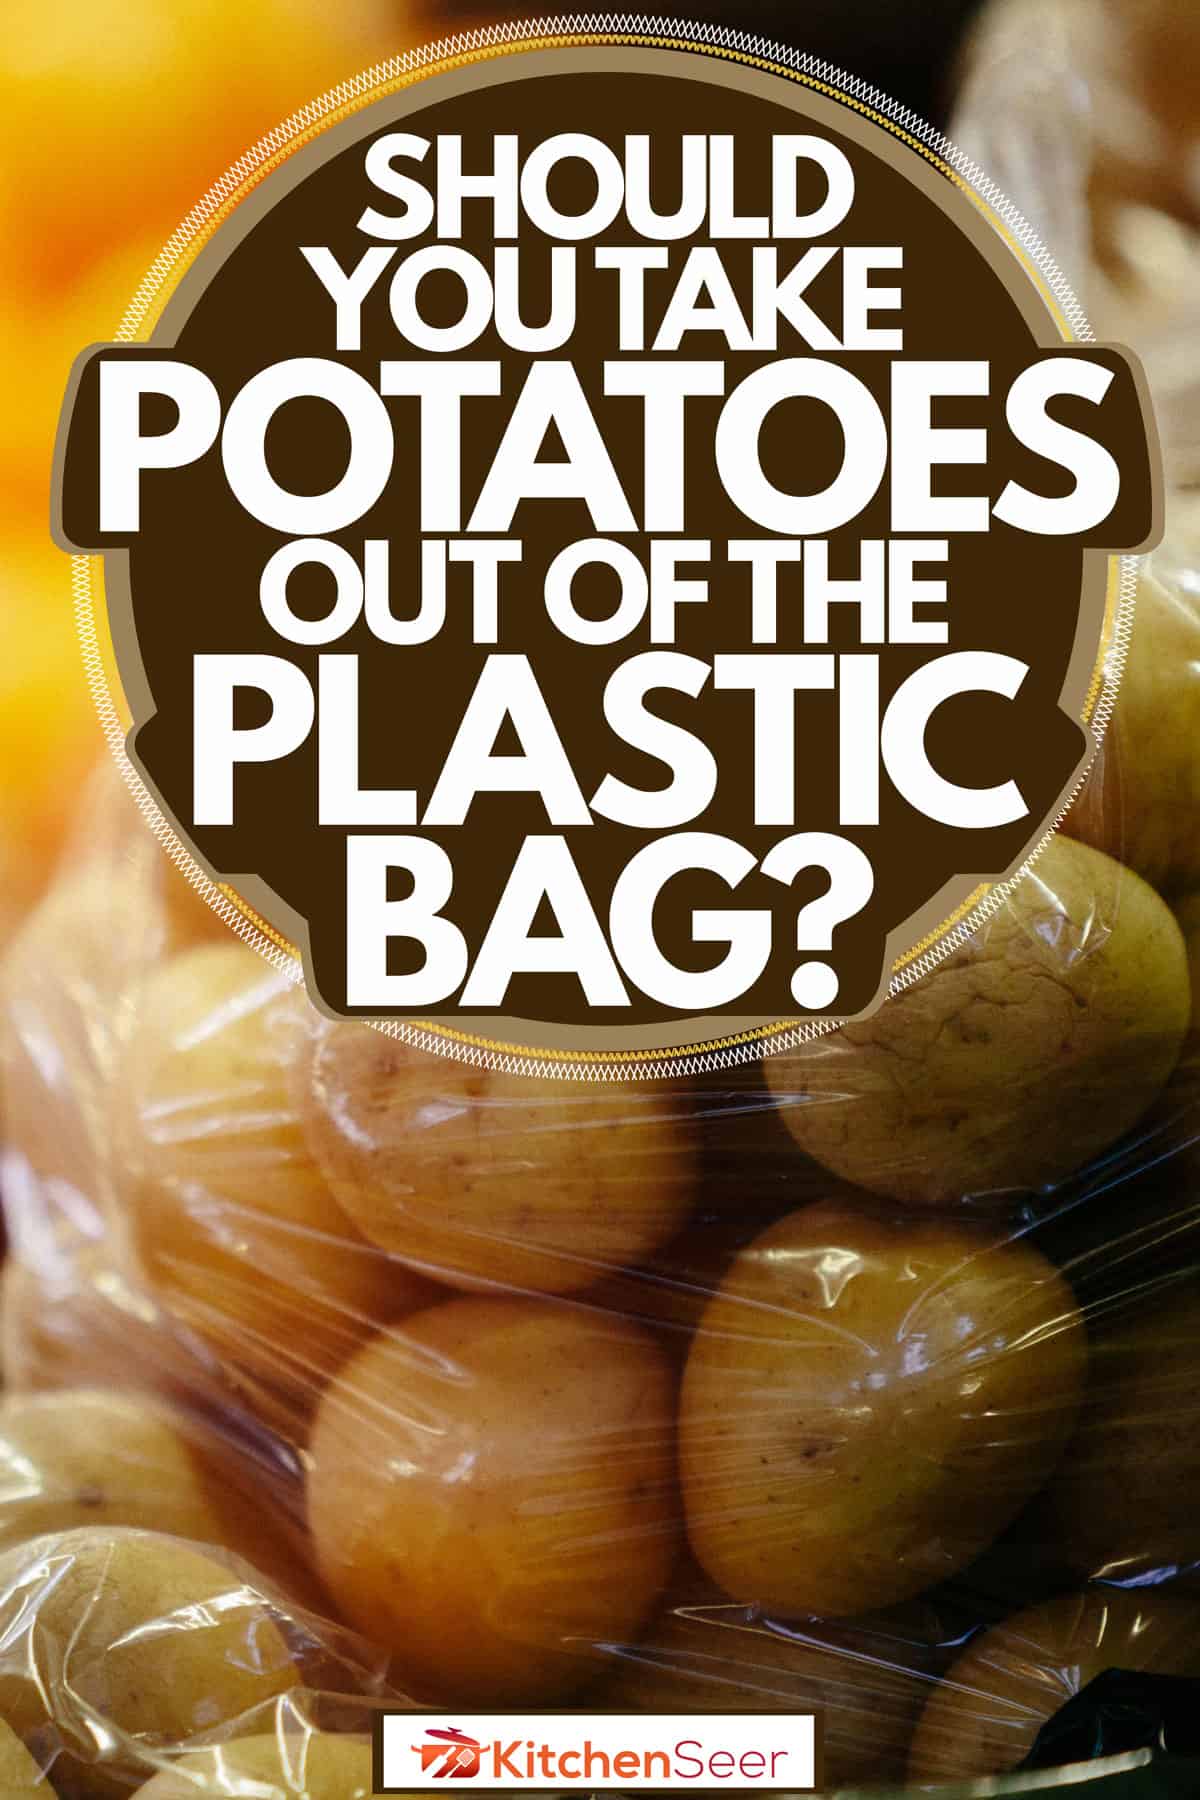 大量的土豆包在一个塑料容器,该带土豆的塑料袋吗?